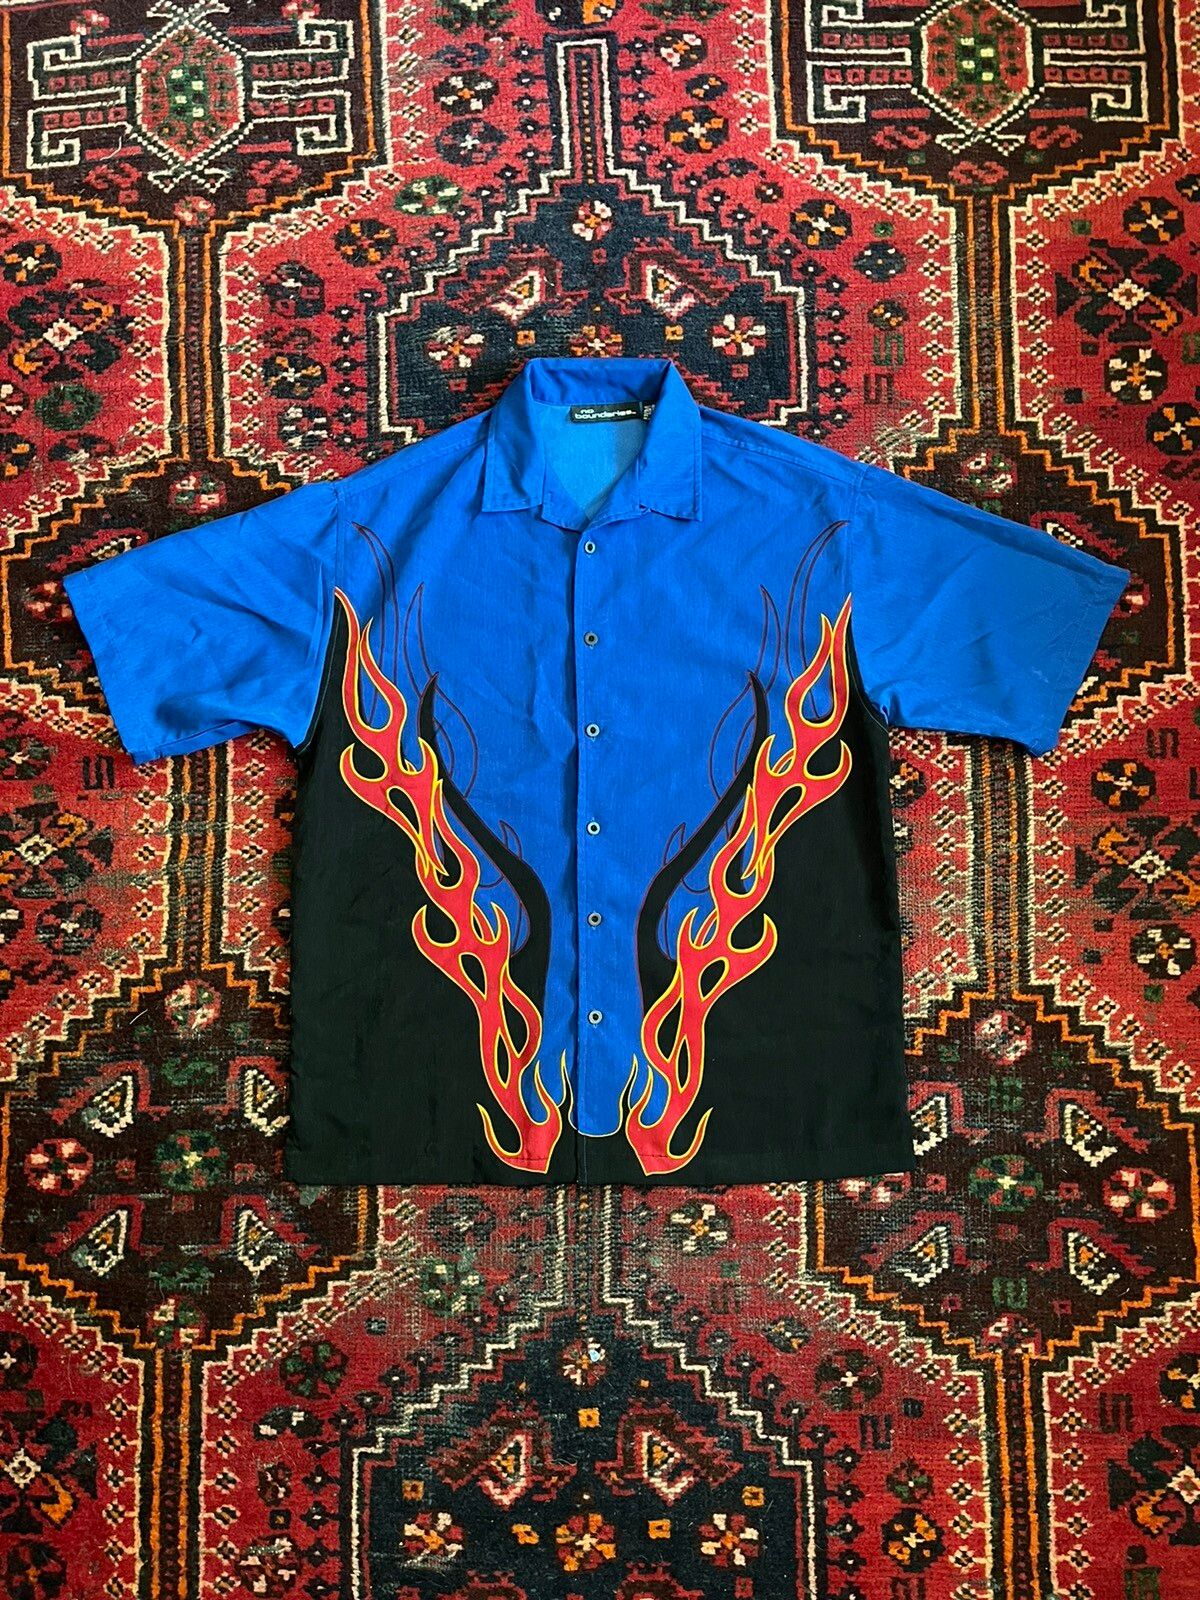 Vintage No Boundaries Flame Fire Button Up Shirt 90s Y2k Men's Size L